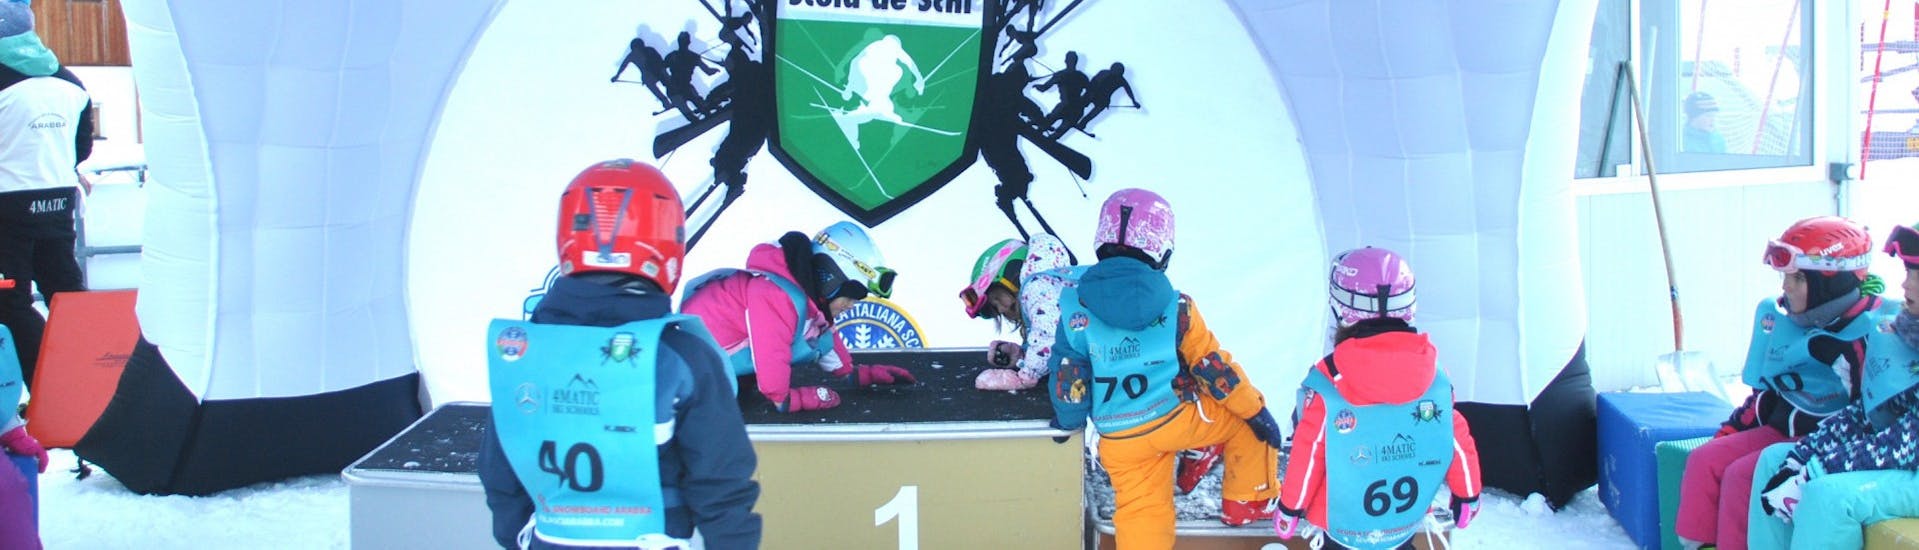 Les petits skieurs dans l'espace enfants pendant les cours de ski pour enfants (à partir de 4 ans) de niveau intermédiaire - Journée complète avec Scuola Italiana Sci Arabba.